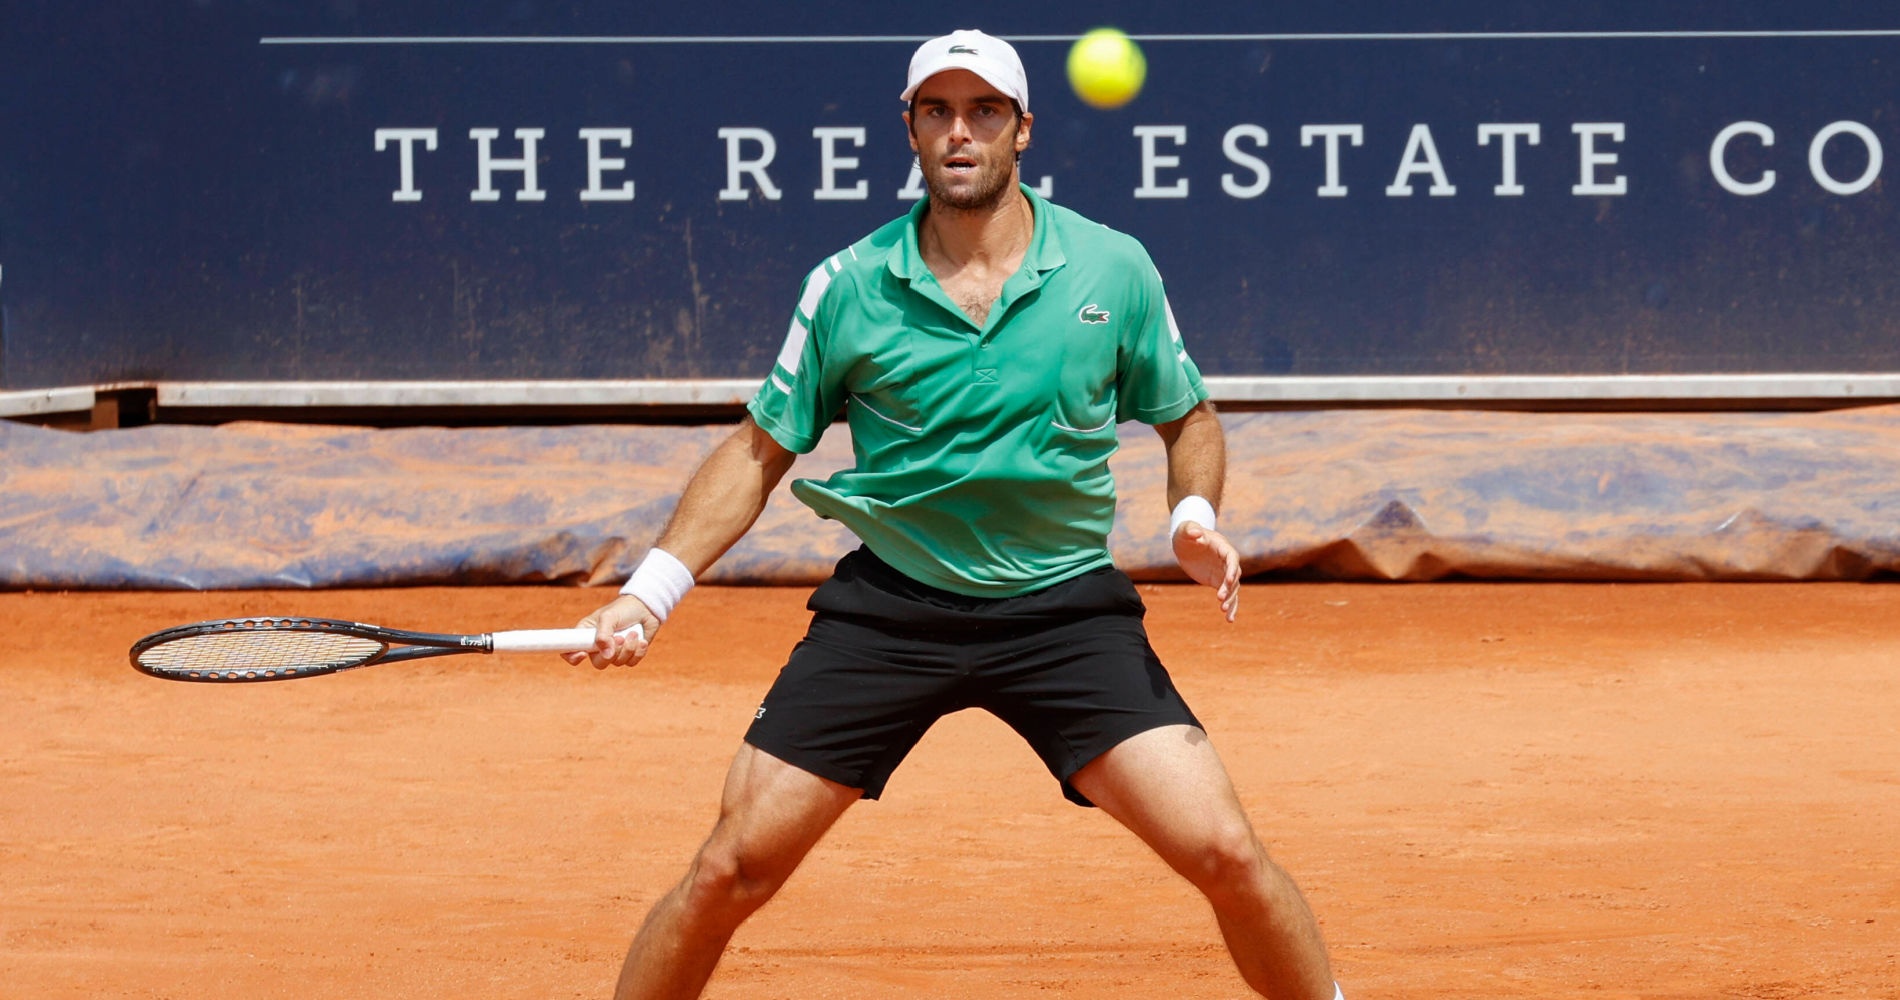 Pablo Andujar - Tennis player - ATP